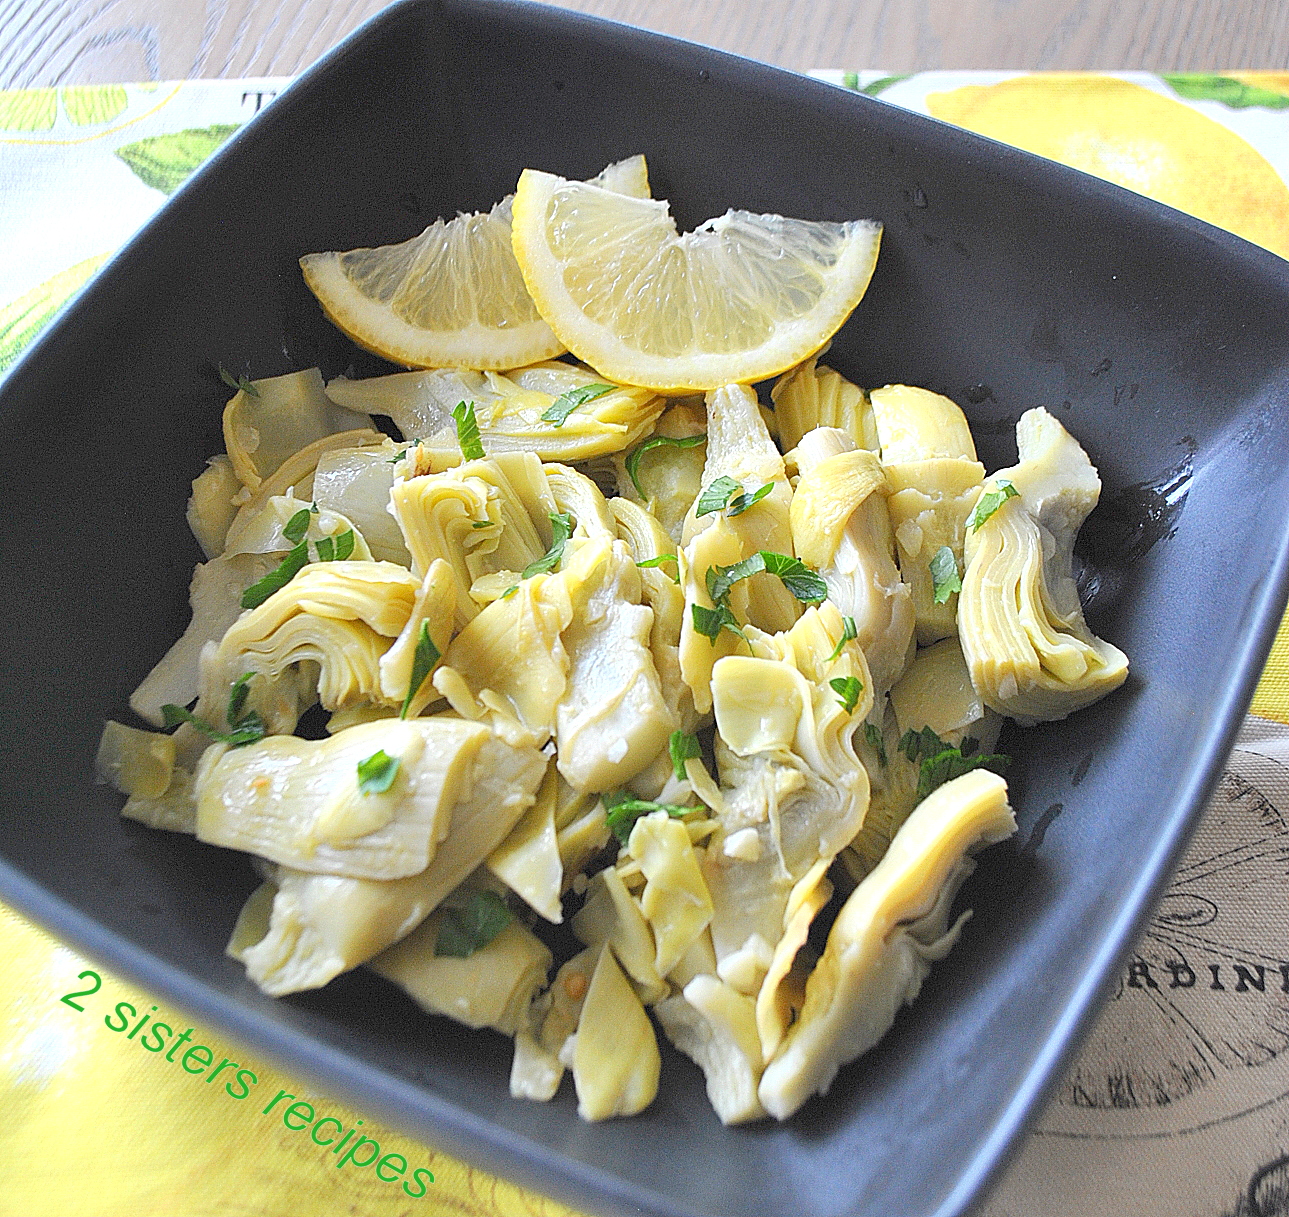 Delicious Artichoke Hearts Salad by 2sistersrecipes.com